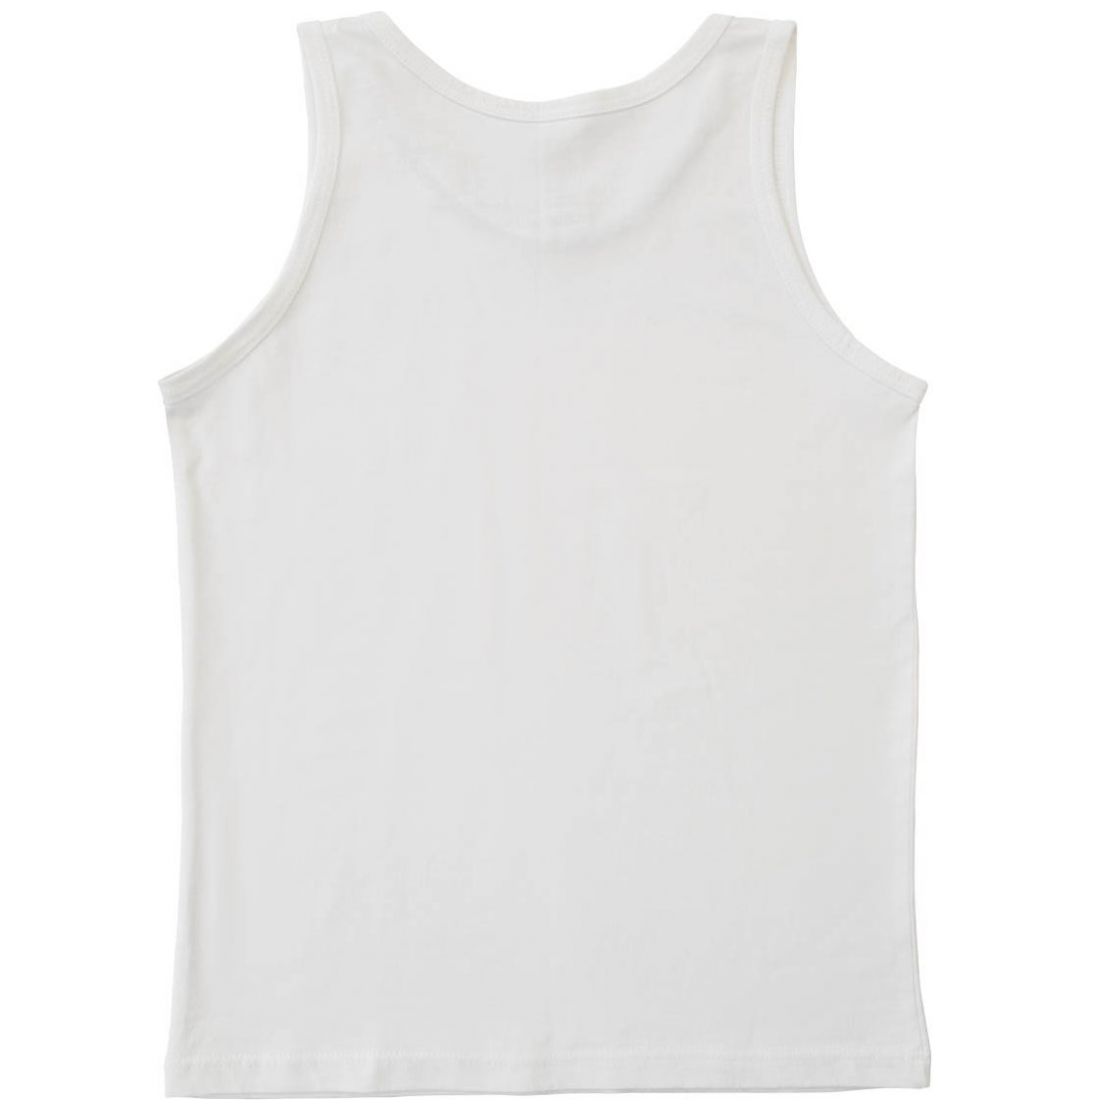 Camiseta Blanca Manda Larga para Niño Oscar Hackman Modelo Ohoic4